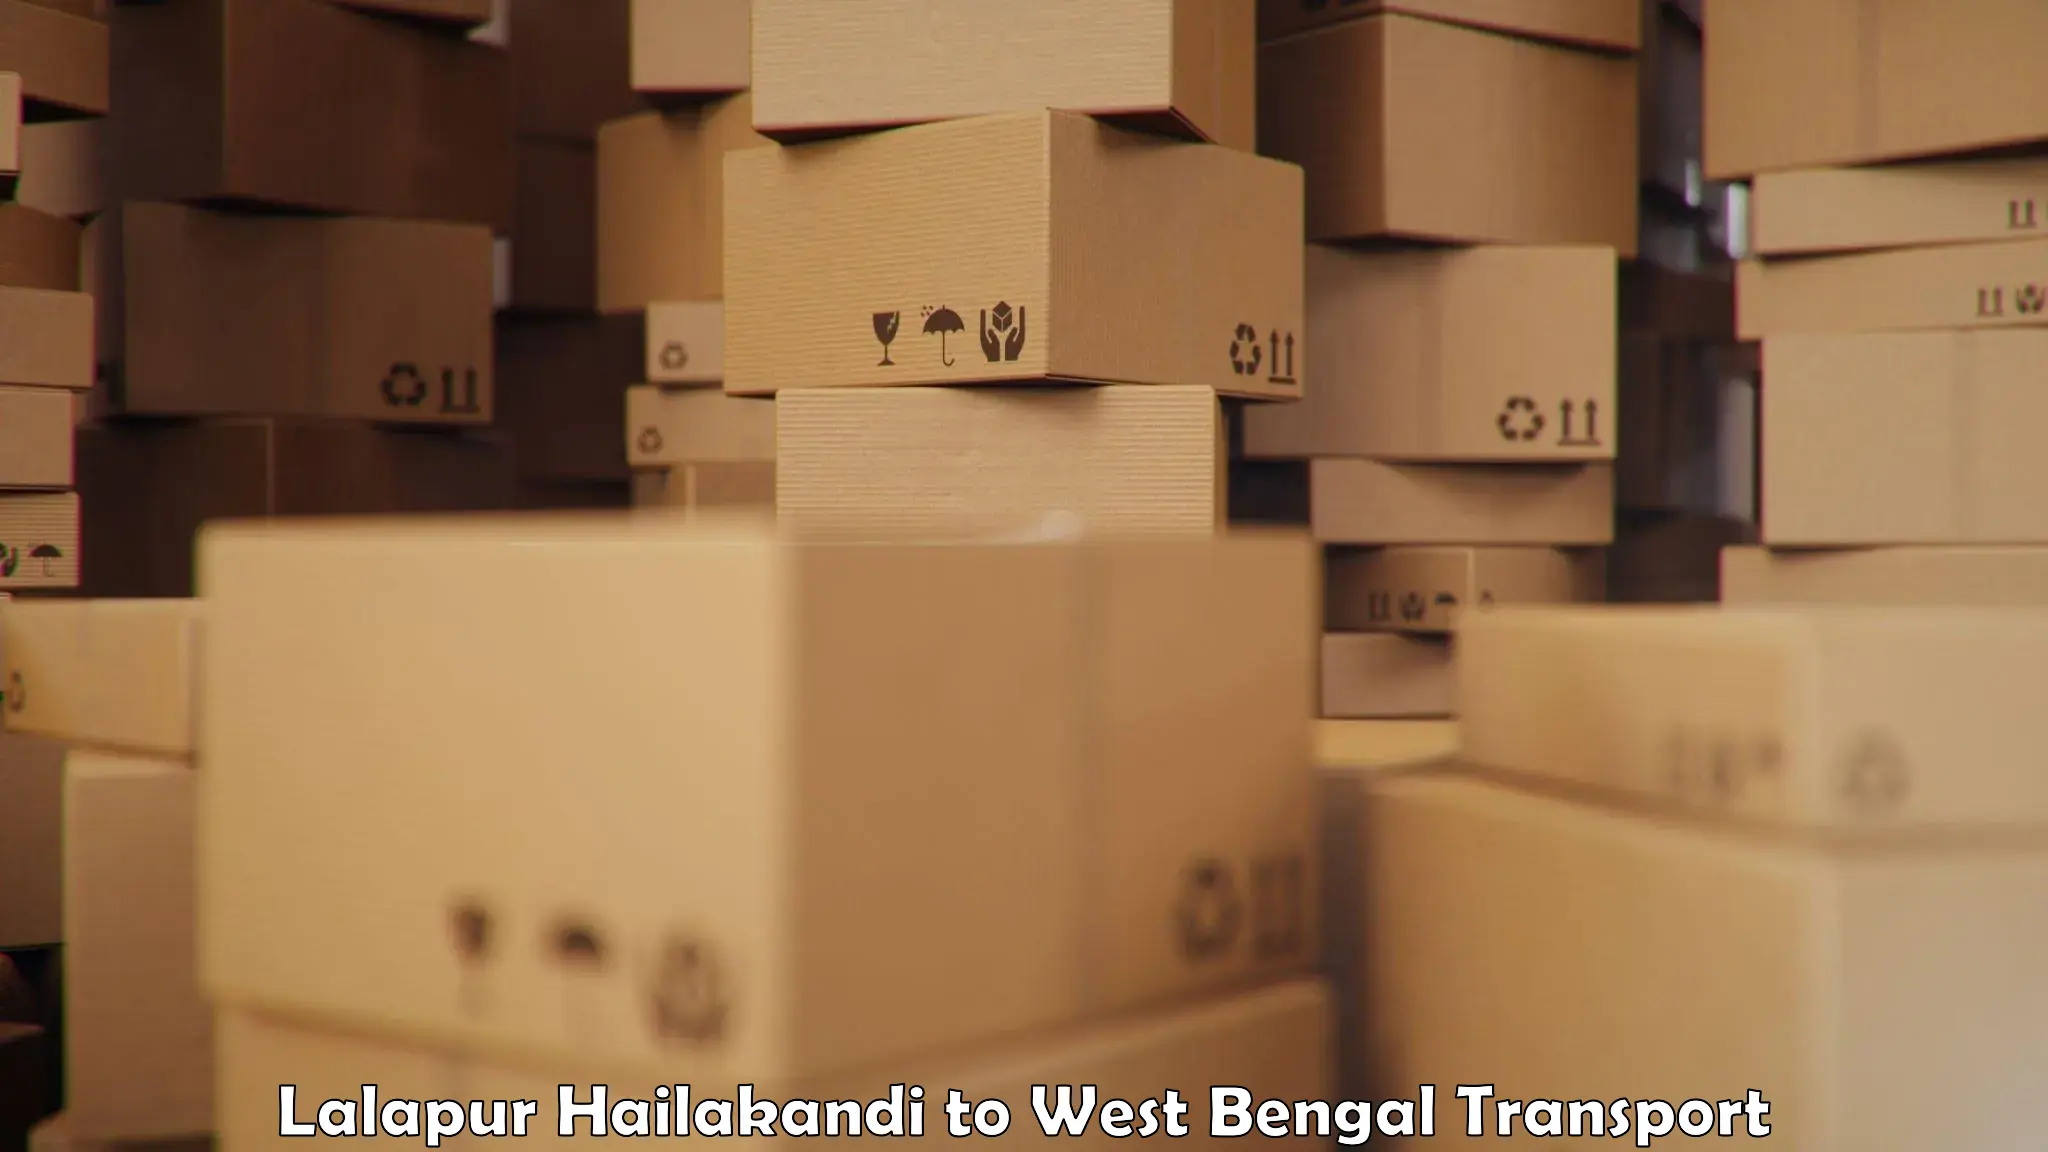 Container transportation services Lalapur Hailakandi to Chandrakona Road